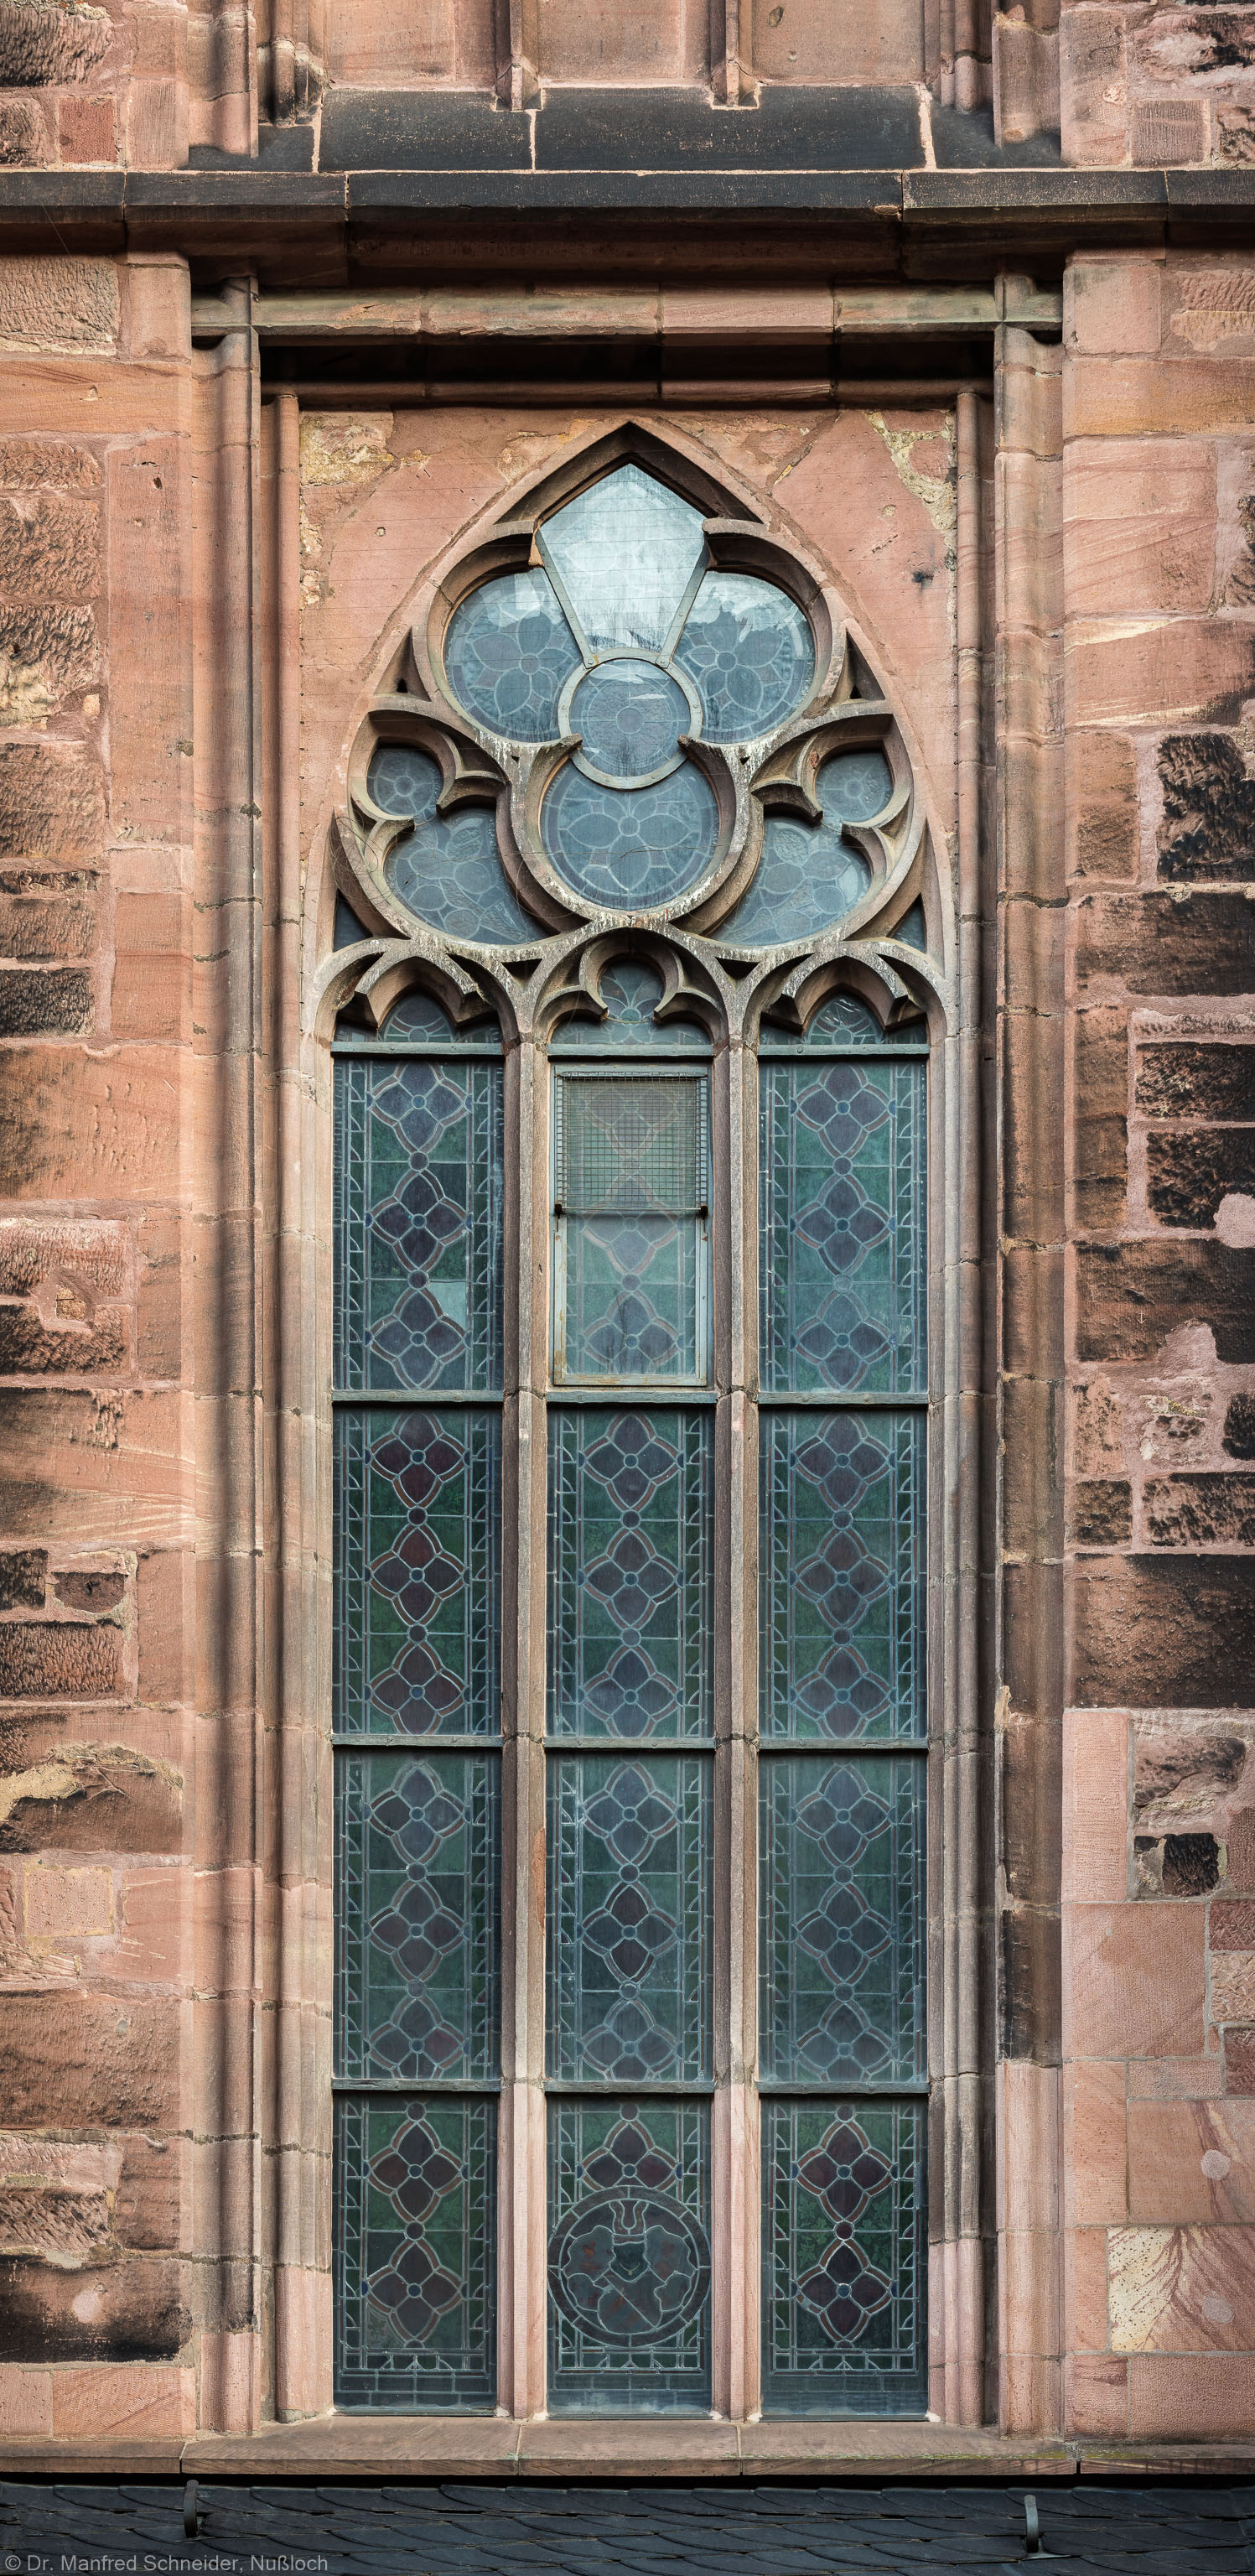 Heidelberg - Heiliggeistkirche - Südseite - 3. Fenster des Südschiffs, von Westen aus gezählt - Blick auf das Ornamentfenster (aufgenommen im November 2015, am Vormittag)